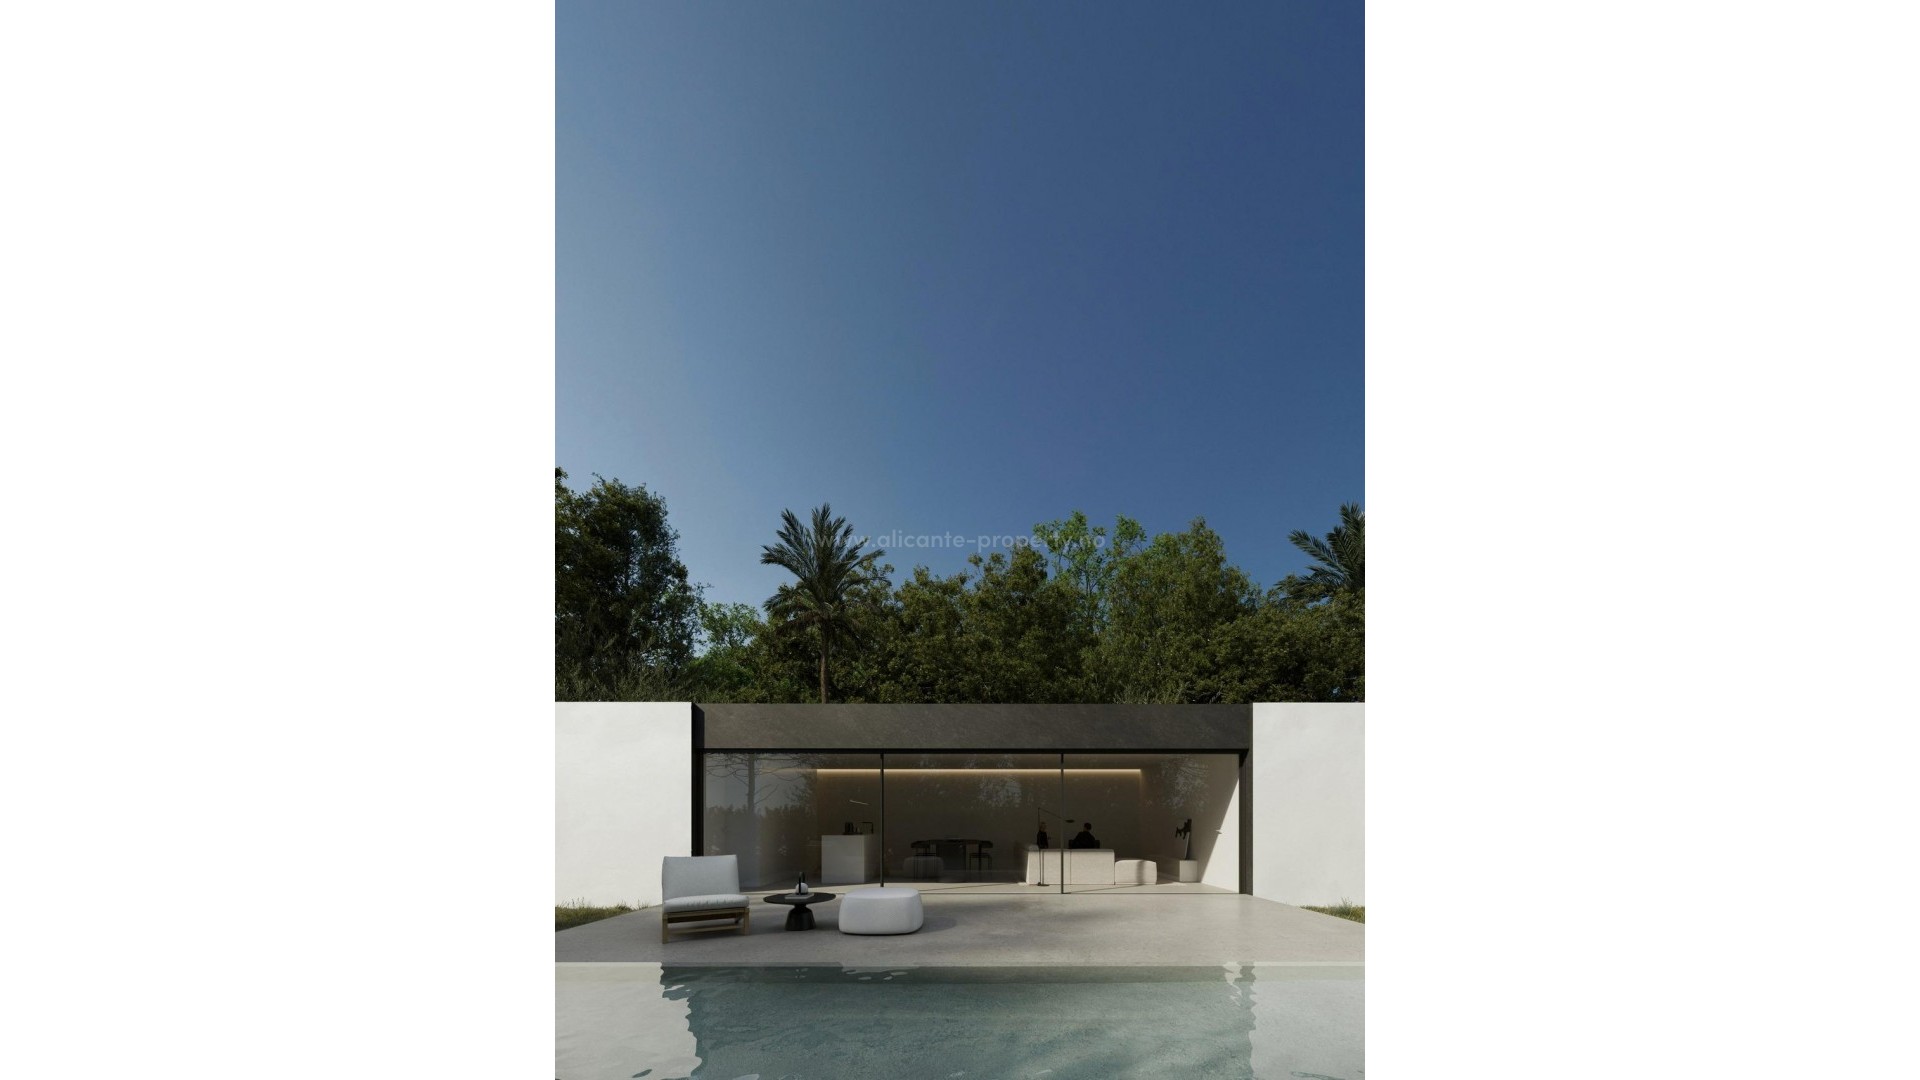 Nybyggede Villaer/hus i Alfas del Pi, 3 soverom og 2 bad, terrasse, privat hage, felles basseng, selvforbruk med solcellepaneler, parkering